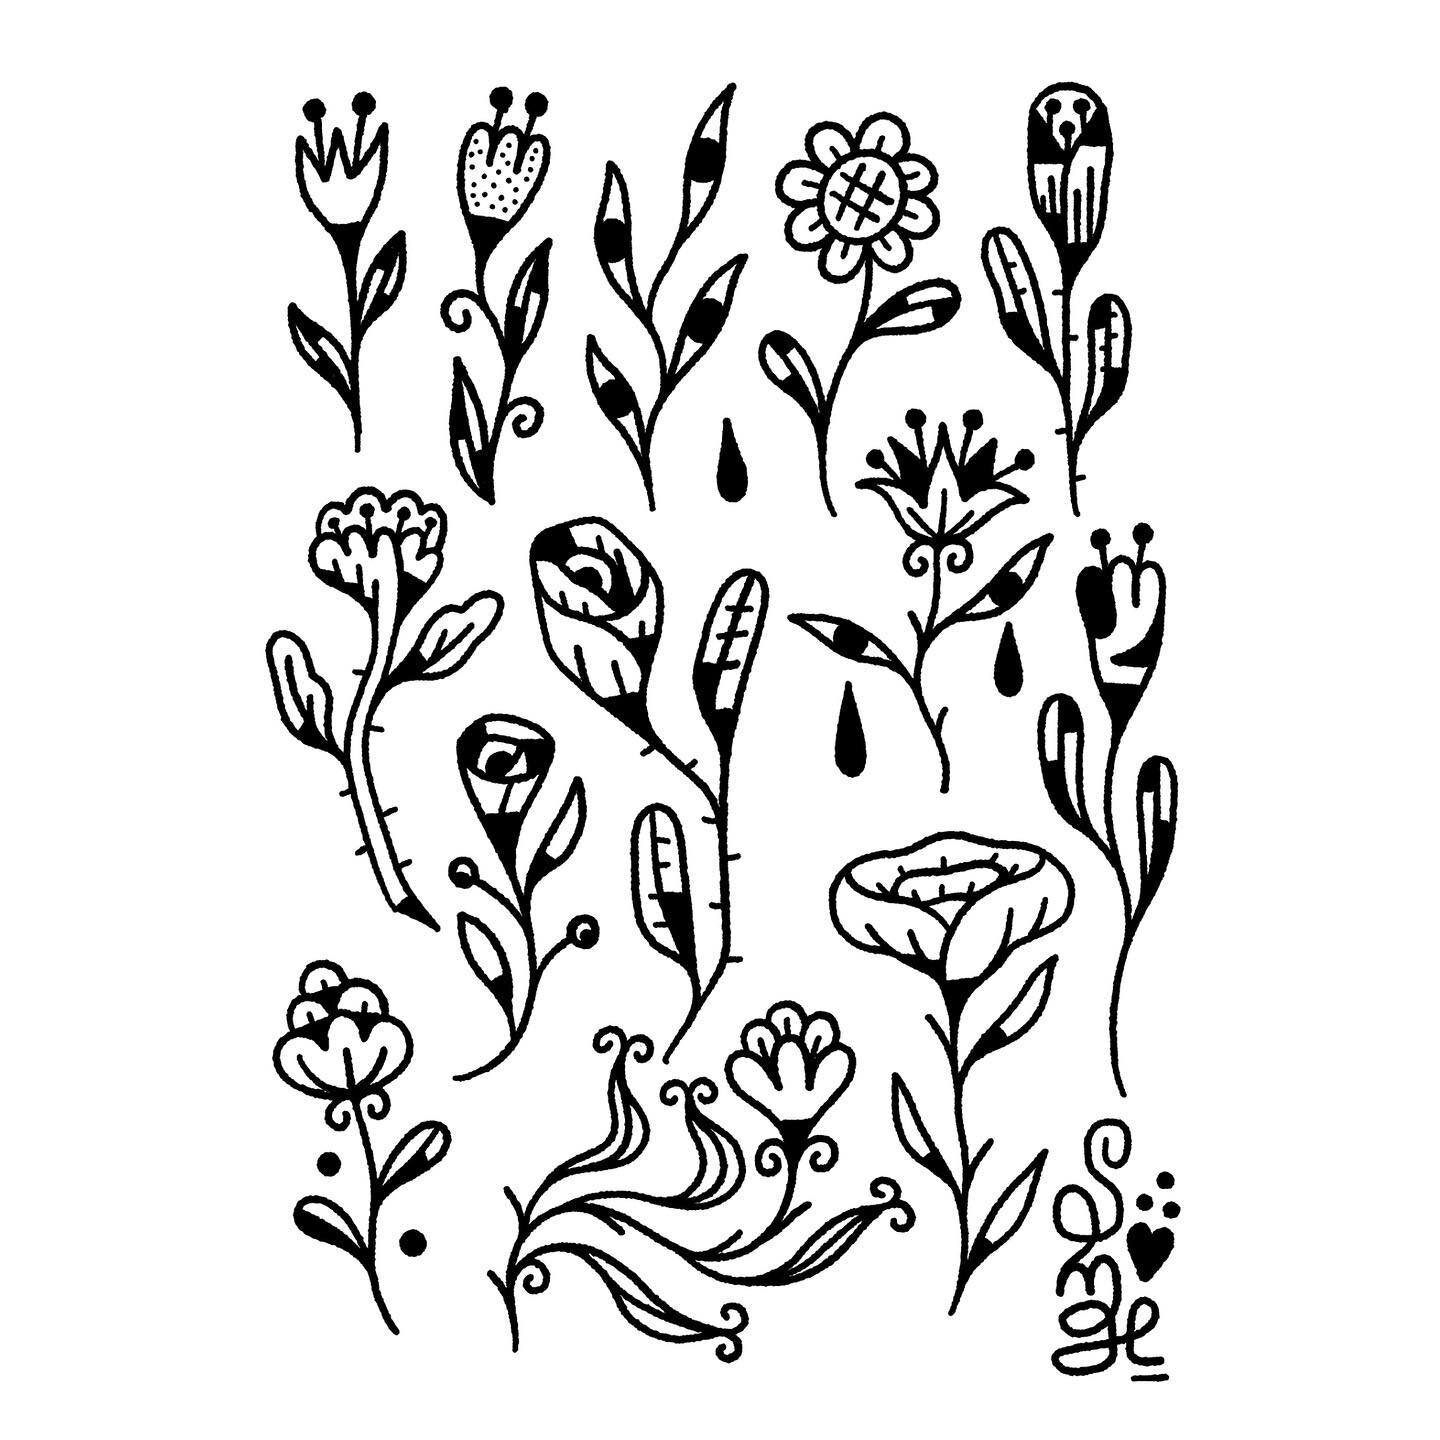 Planche de flash disponibles r&eacute;alis&eacute;e par @hippolyte__songe 
.
Infos/booking par DM

#flashtattoo #illustration #tattoo #tattooartist #bonimentsbleus #flowers #songe #bonimentsbleus #snake #flowers